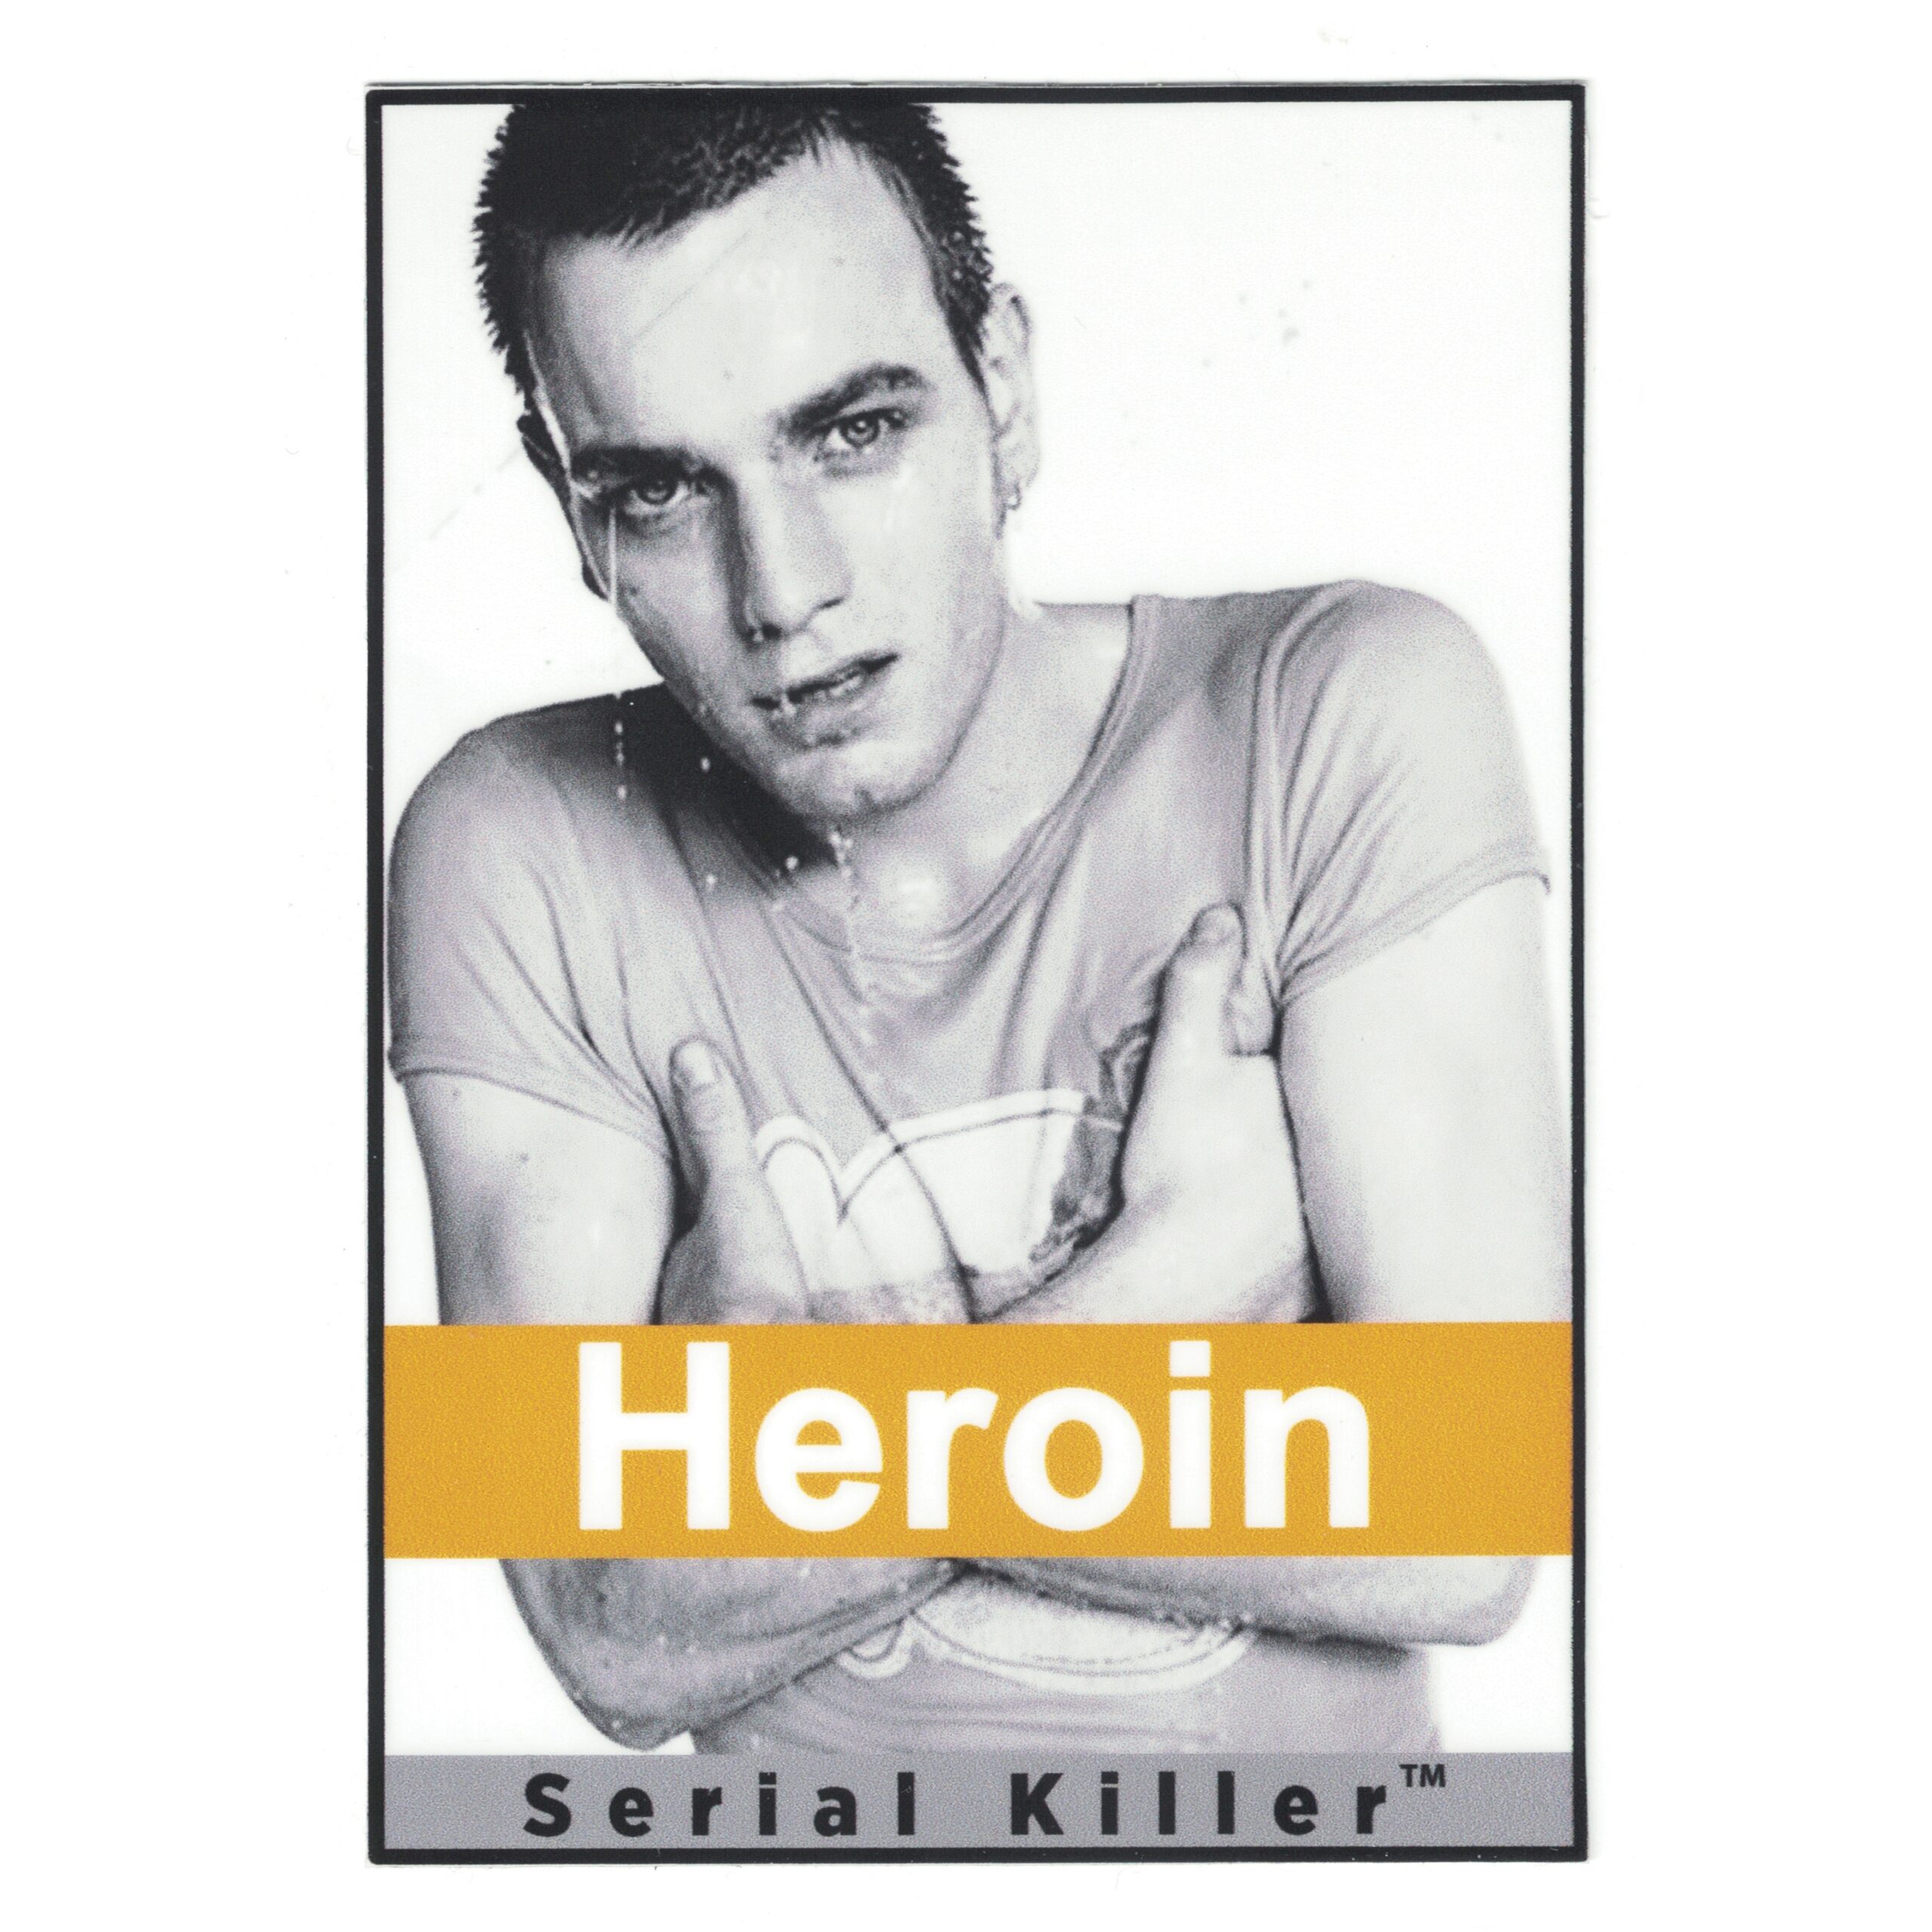 Serial Killer Trainspotting Heroin